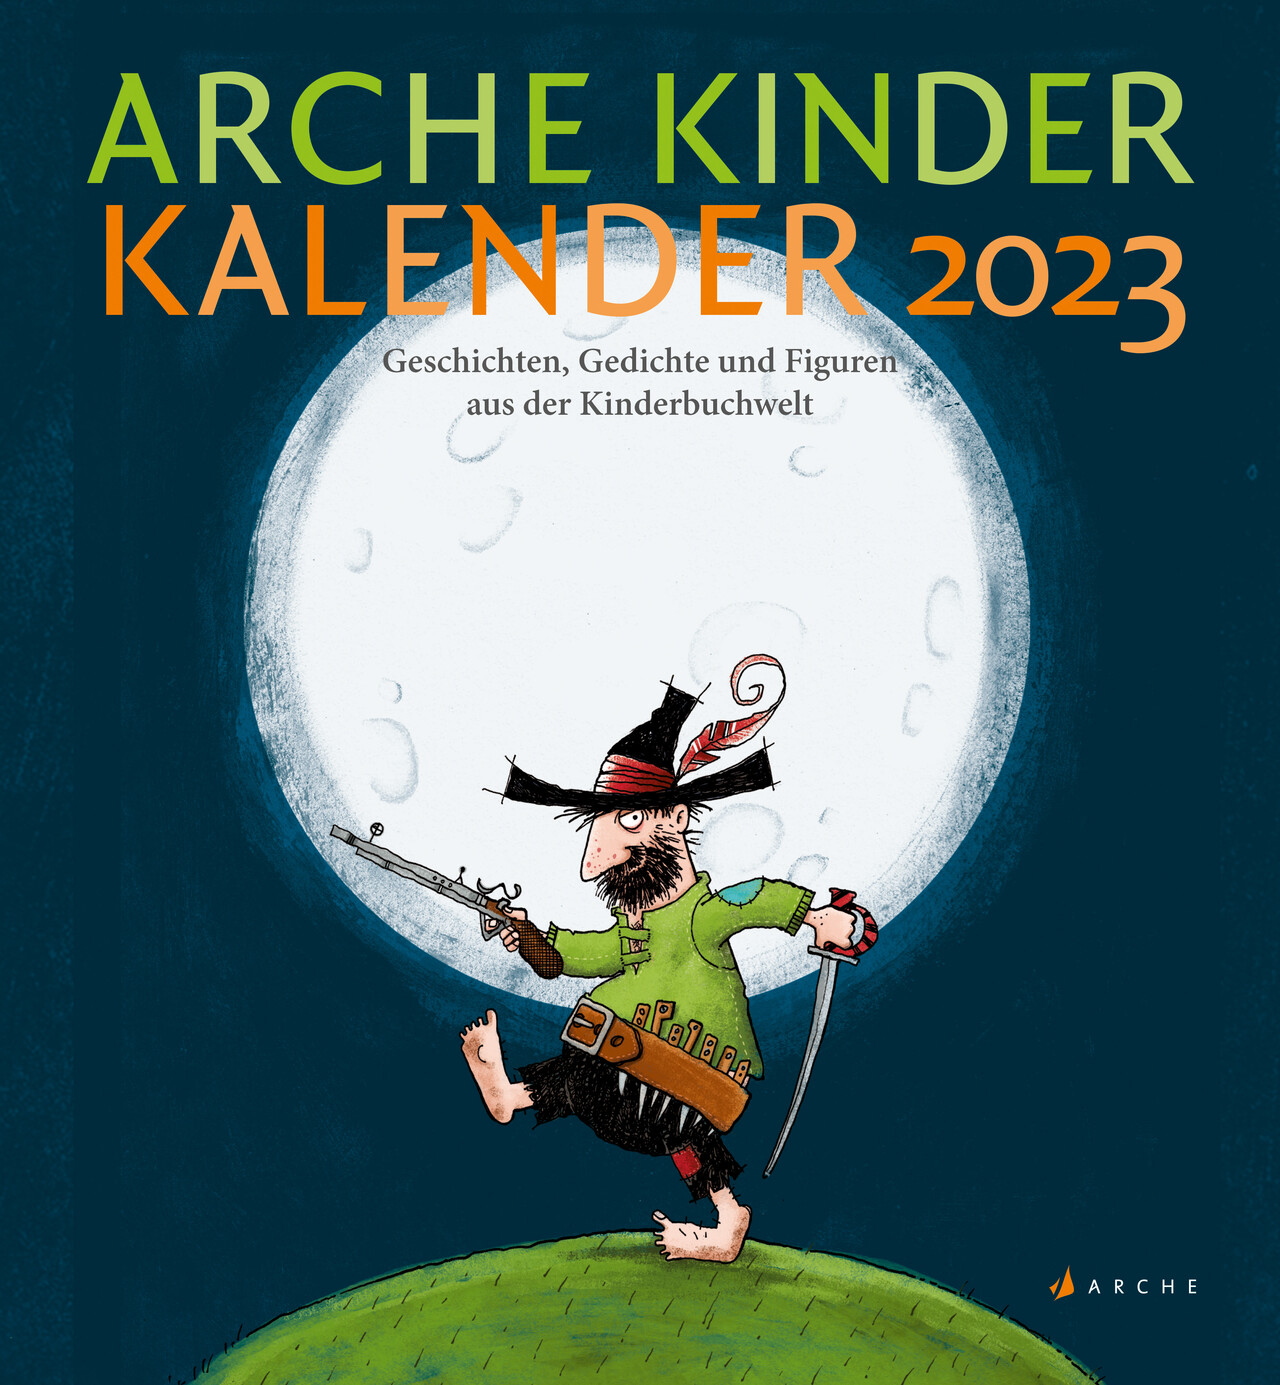 ARCHE KINDERKALENDER 2023